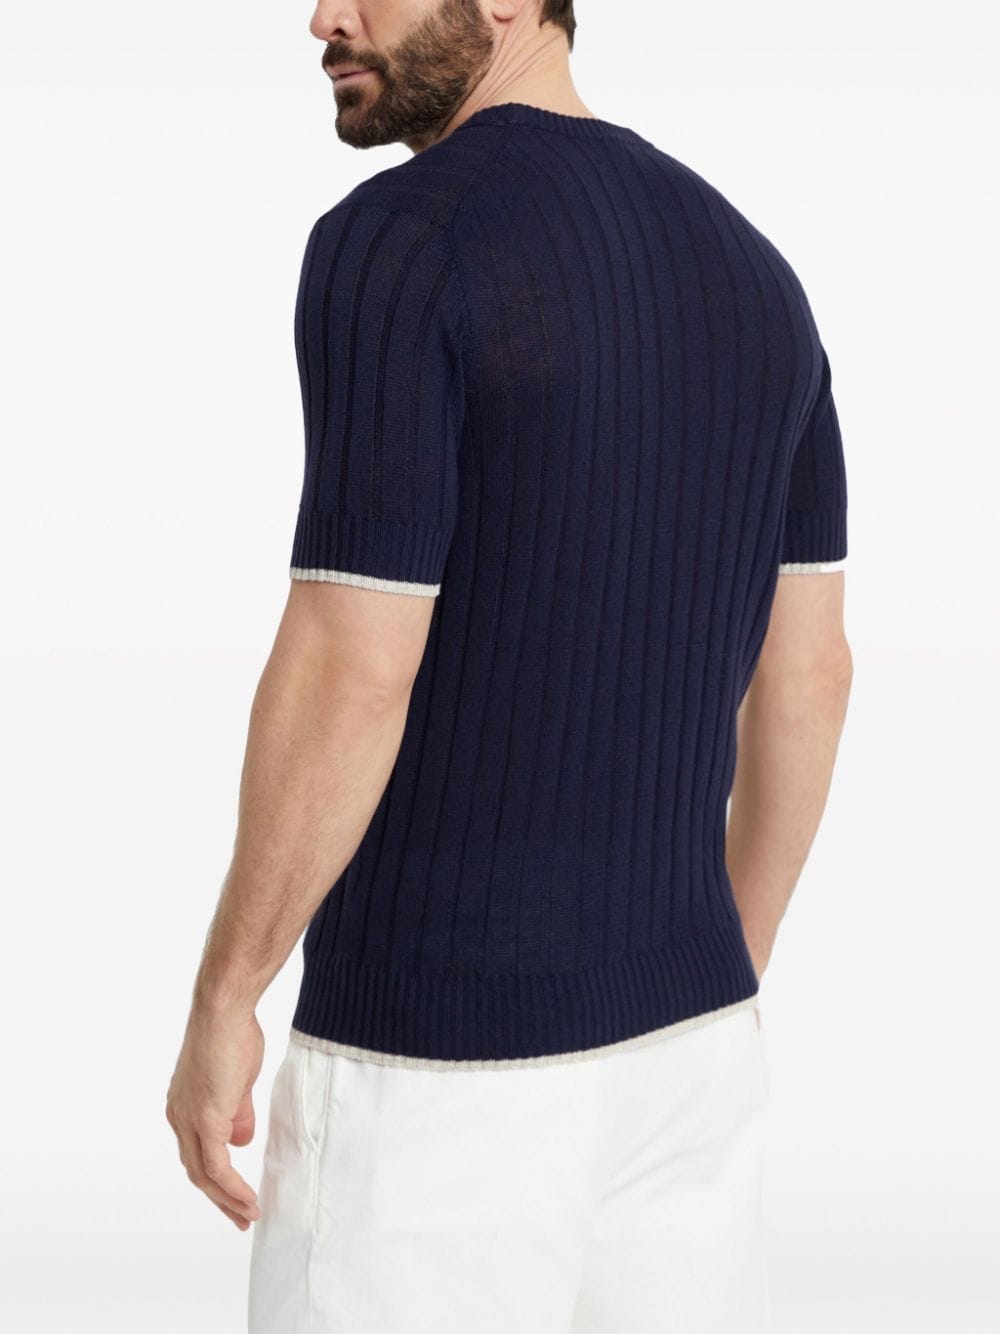 メンズ ネイビーブルー 麻混紡リブニット 半袖セーター